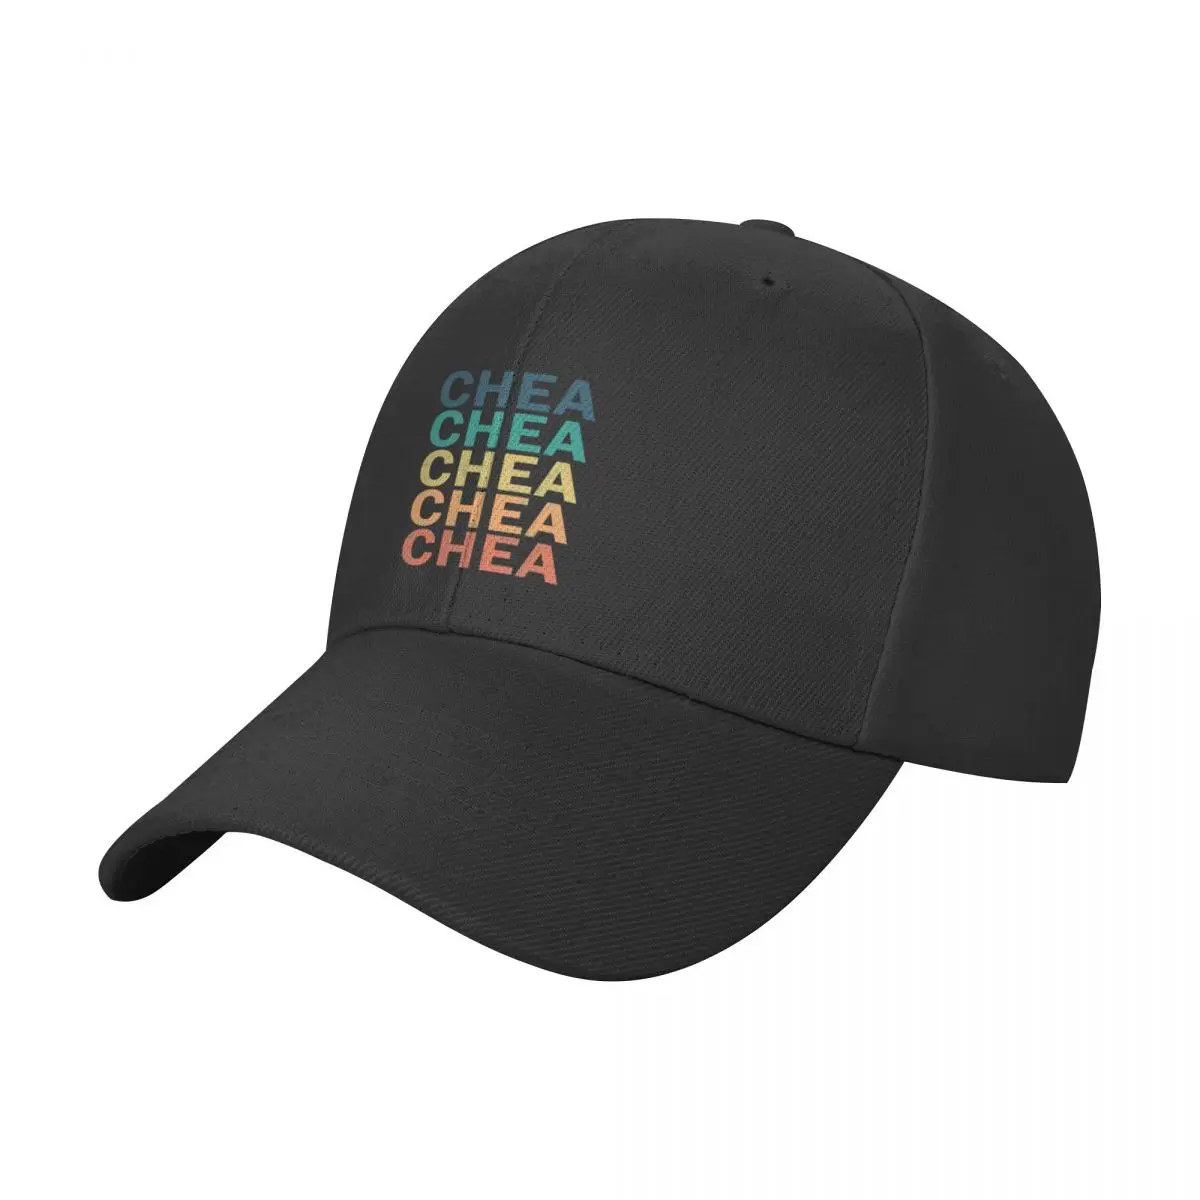 Футболка с названием Chea - Chea Vintage Retro Chea Name Подарочная Кепка С названием Chea, Бейсболка Для Регби, Пляжная кепка для пикника, мужская шляпа, Женская